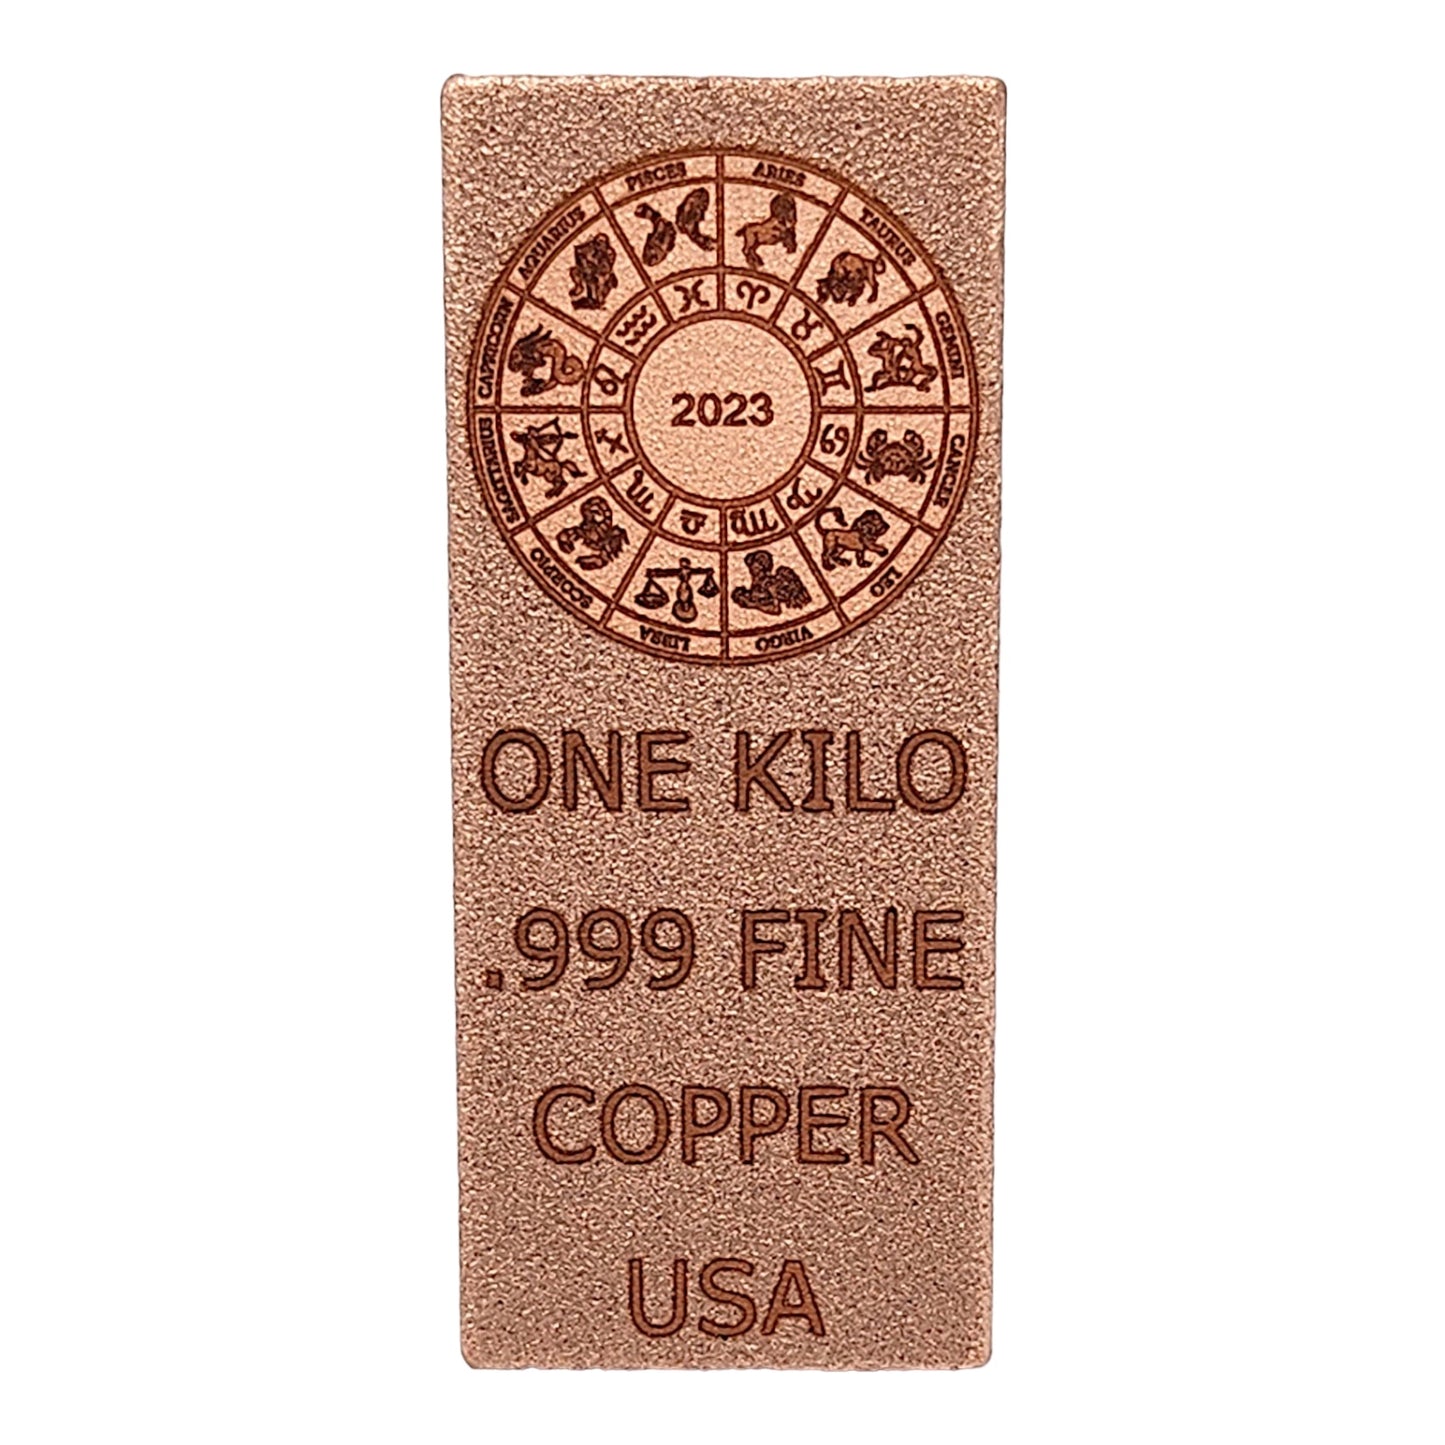 ZODIAC DESIGN - 1 KILO .999 FINE COPPER Bullion by Liberty Copper